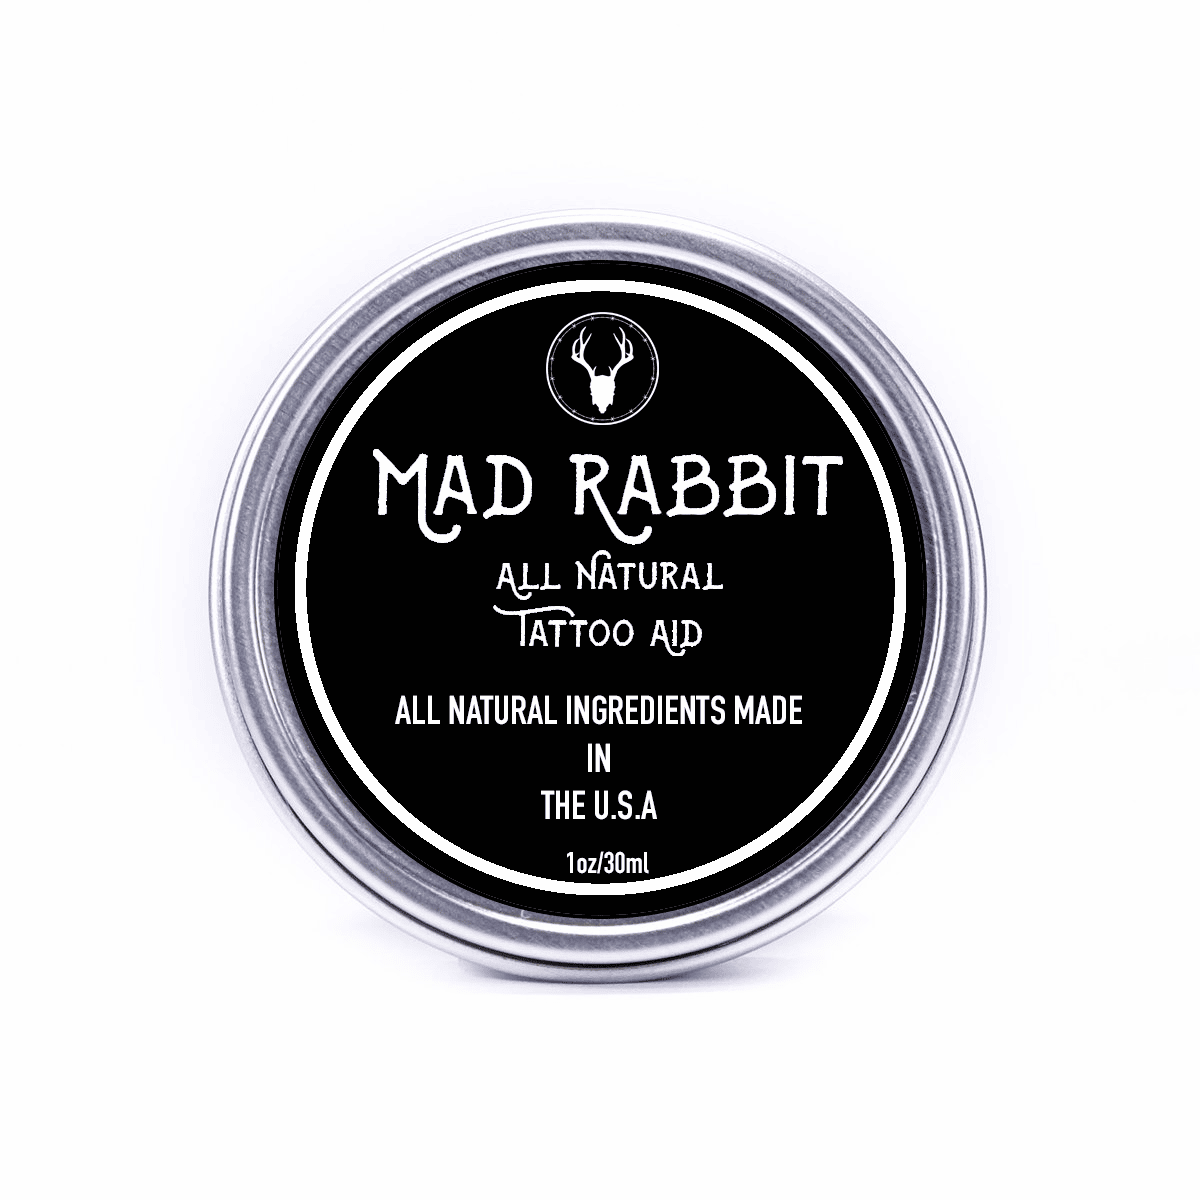 Mad Rabbit Tattoo Balm Reviews